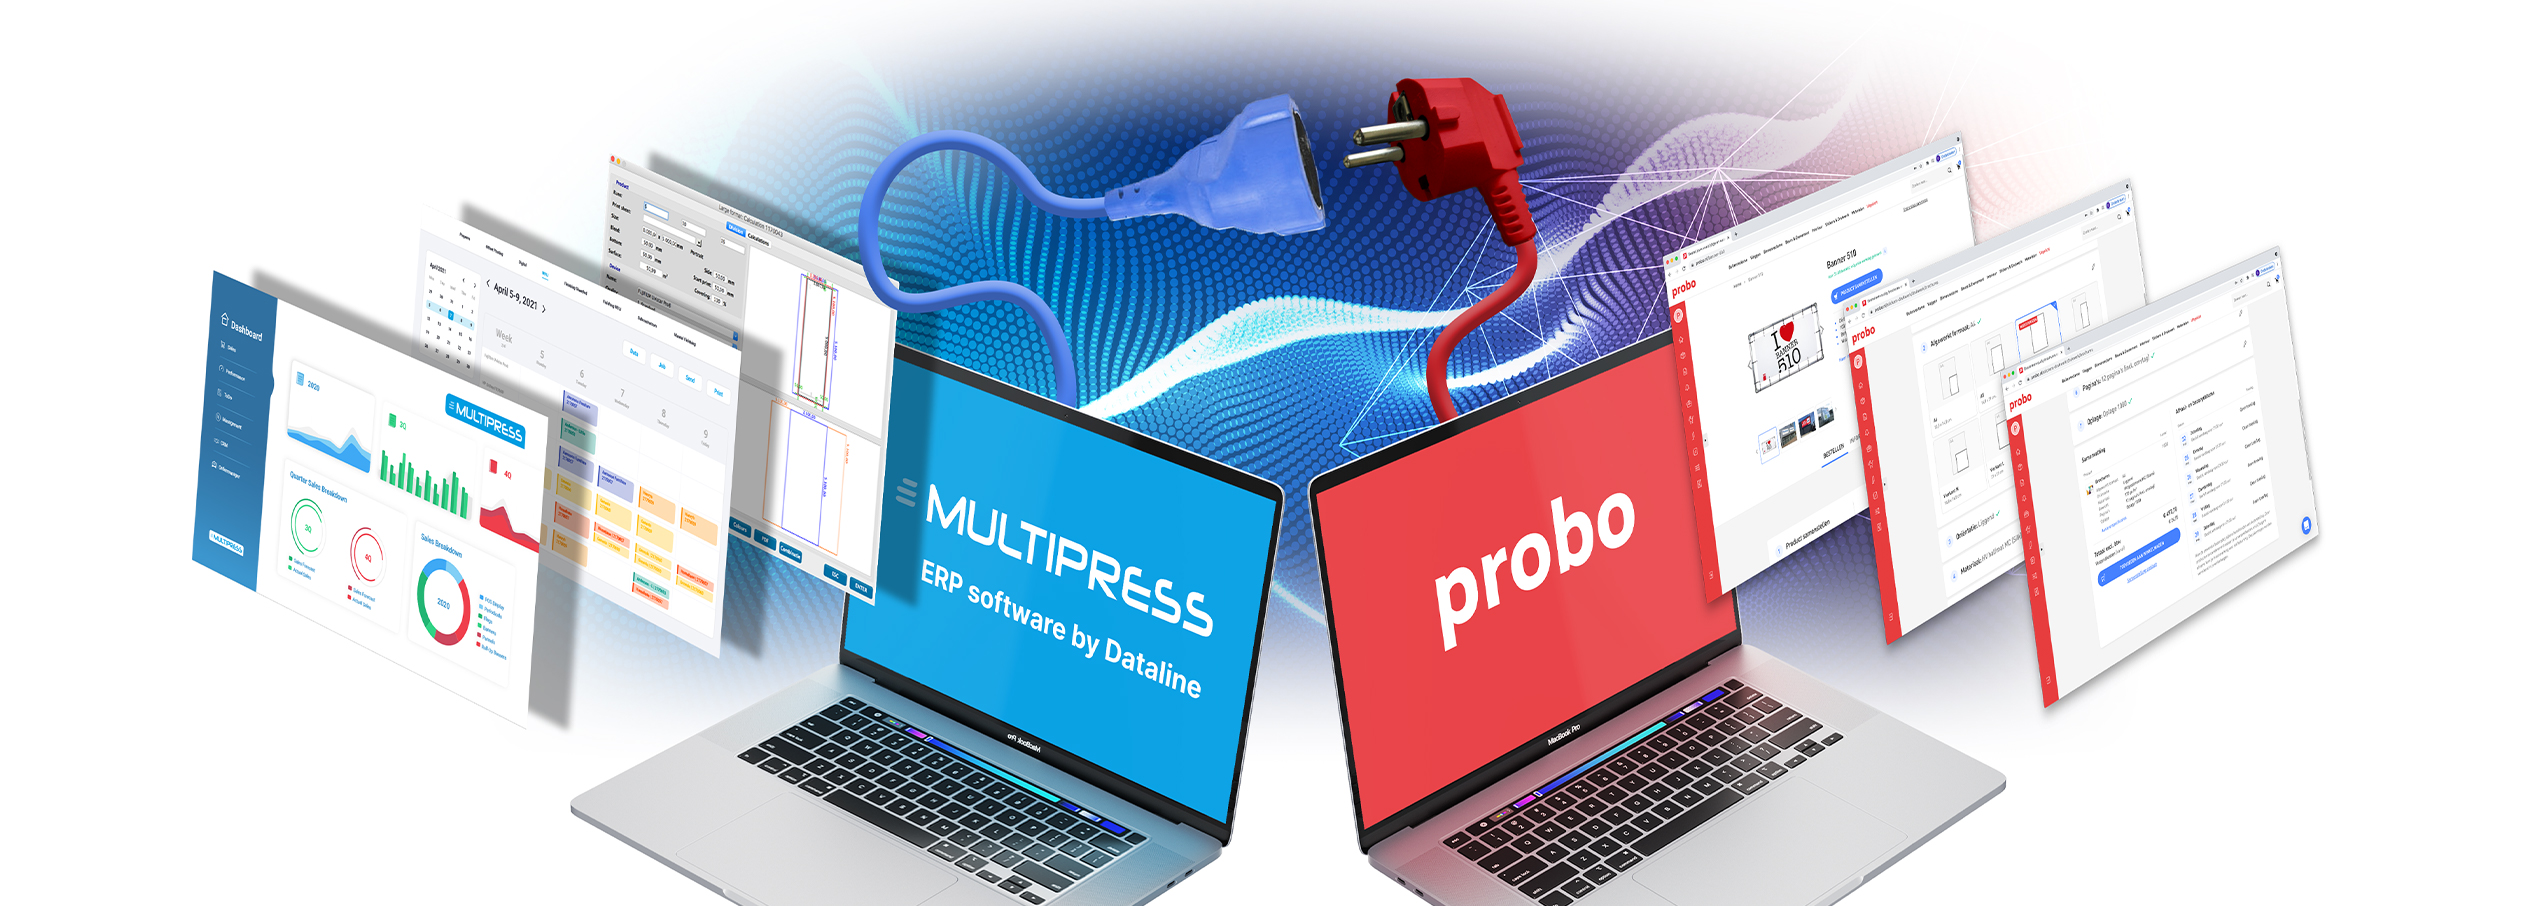 MultiPress-Anwender können direkt bei Probo bestellen